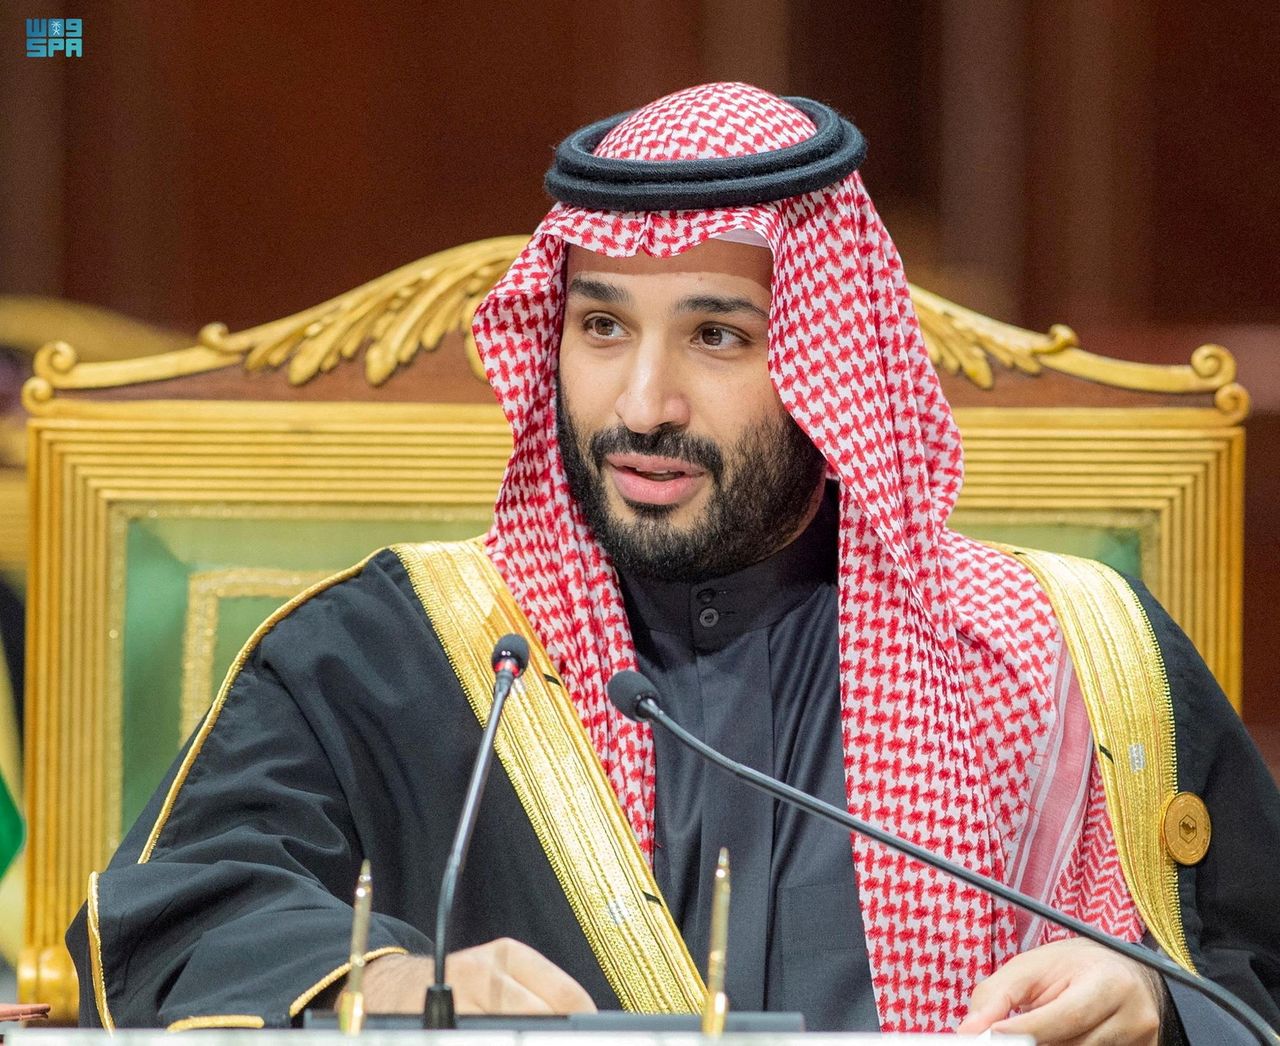 ولي العهد السعودي الأمير محمد بن سلمان في الرياض يوم 14 ديسمبر كانون الأول 2021. صورة من وكالة الأنباء السعودية.